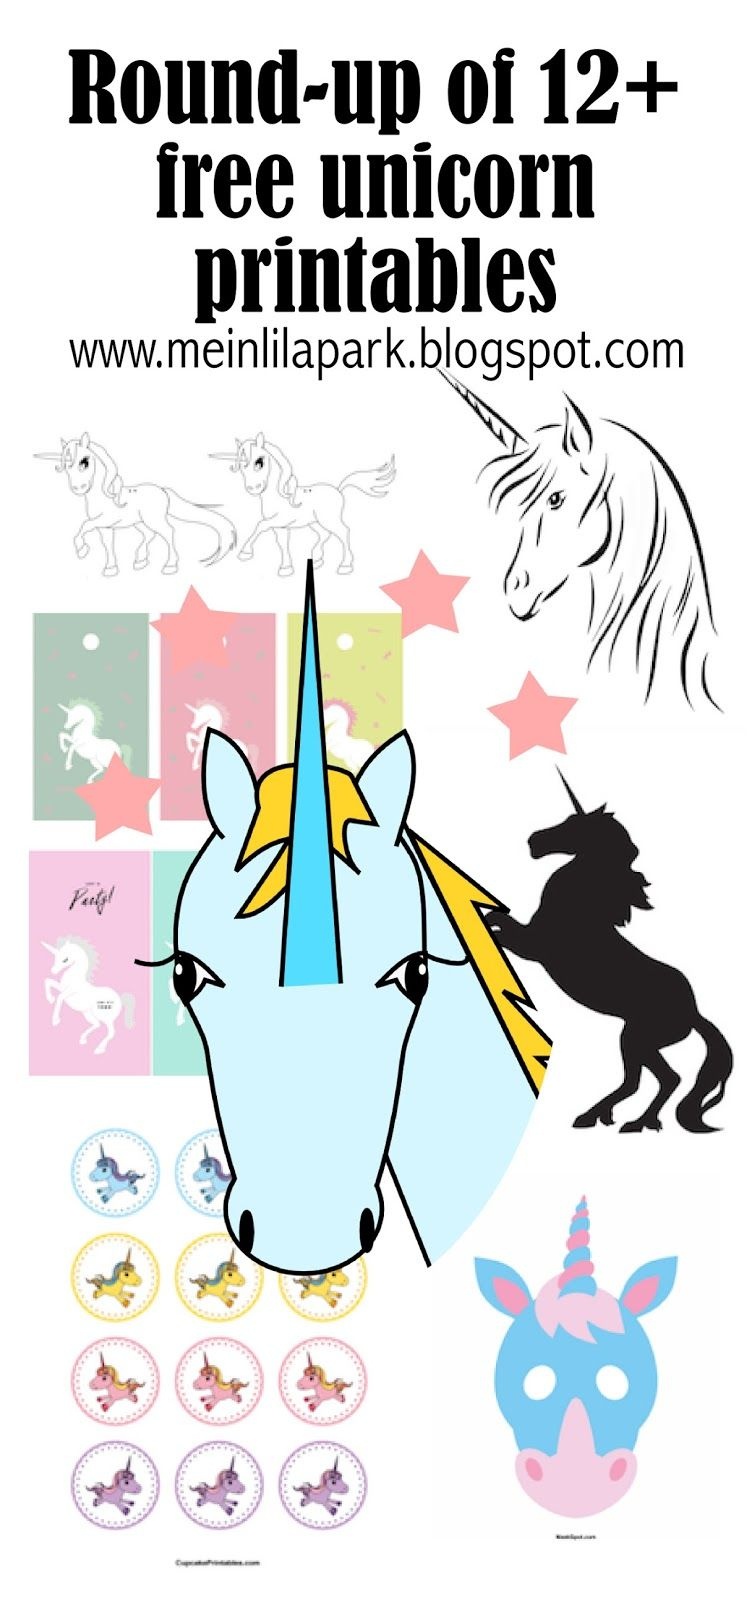 12+ Free Unicorn Printables - Einhorn - Round-Up | Printables - Unicorn Name Free Printable